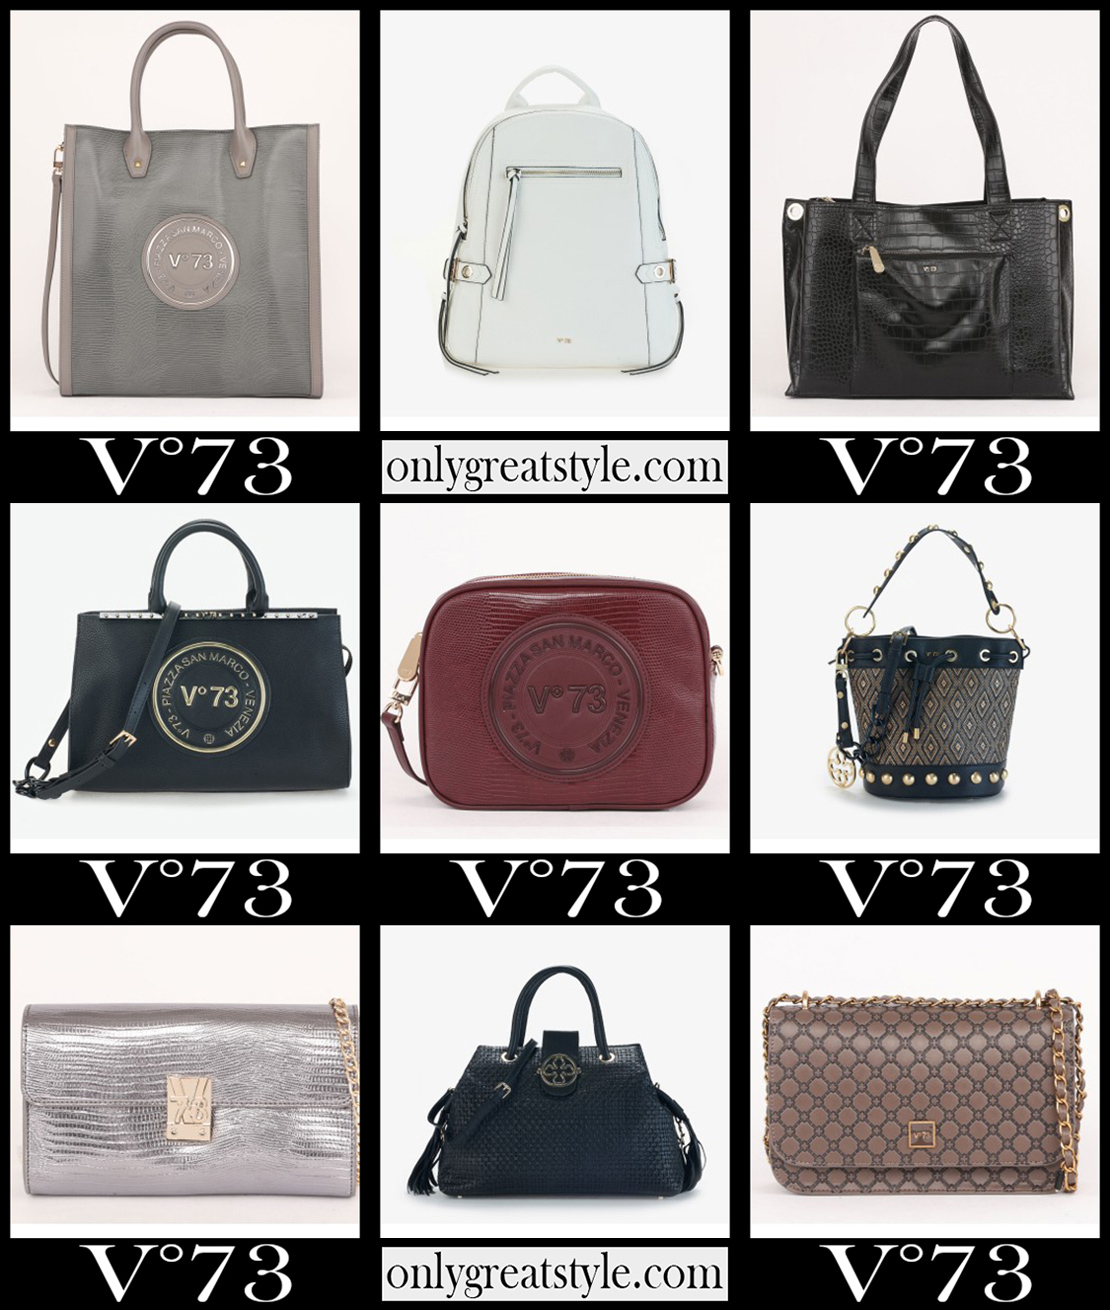 V73 bags 2021 new arrivals womens handbags